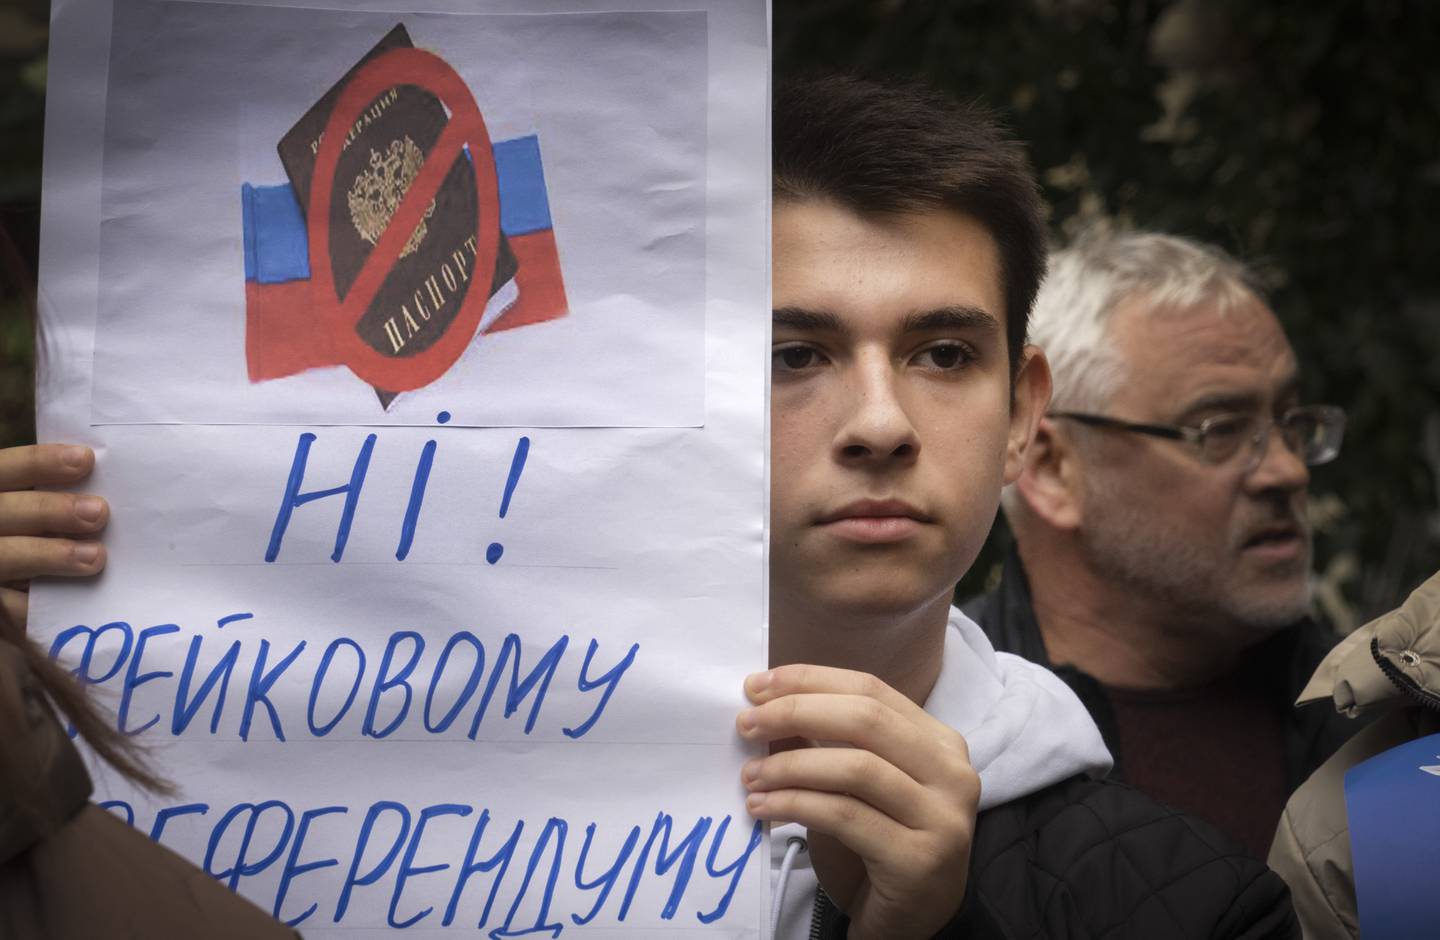 Un manifestante sostiene un cartel que dice: "¡No! a un falso referéndum", mientras los residentes de Mariupol asisten a una manifestación contra un referéndum orquestado por el Kremlin en Kiev, Ucrania, el sábado 24 de septiembre de 2022. La votación comenzó el viernes en cuatro regiones de Ucrania controladas por Moscú sobre los referendos para formar parte de Rusia. (AP Photo/Efrem Lukatsky)